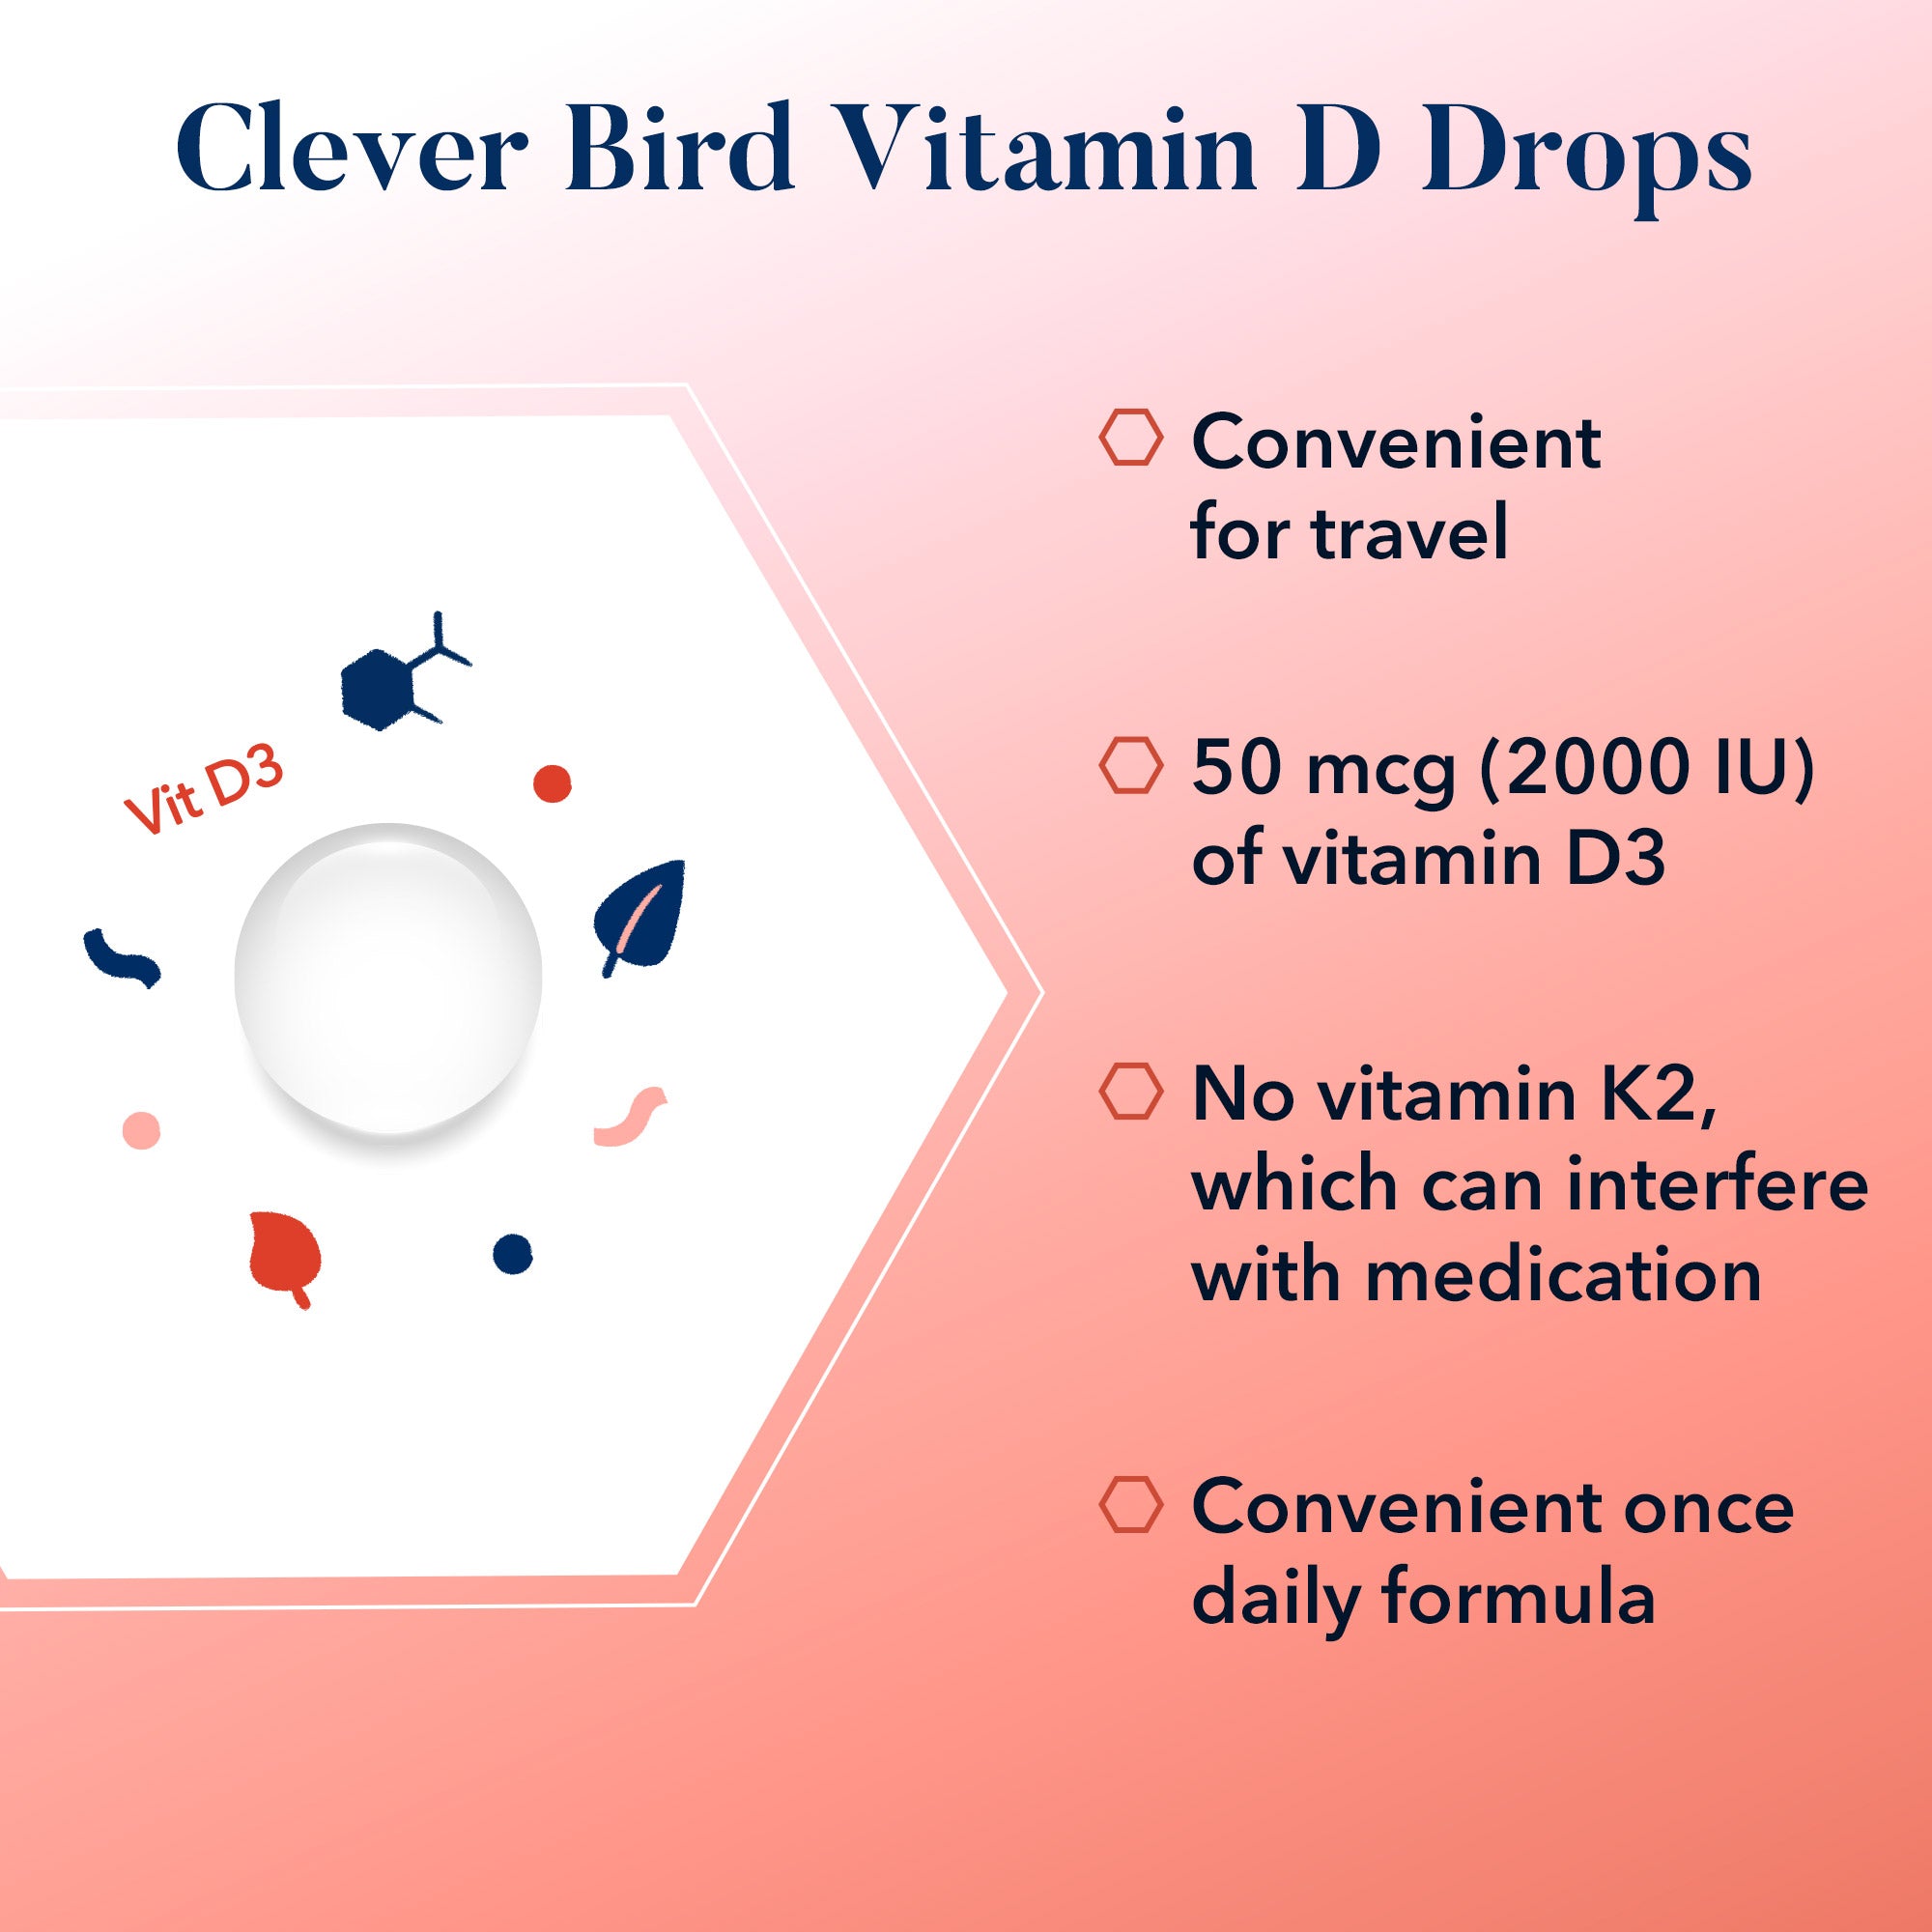 Clever Bird Vitamin D Drops